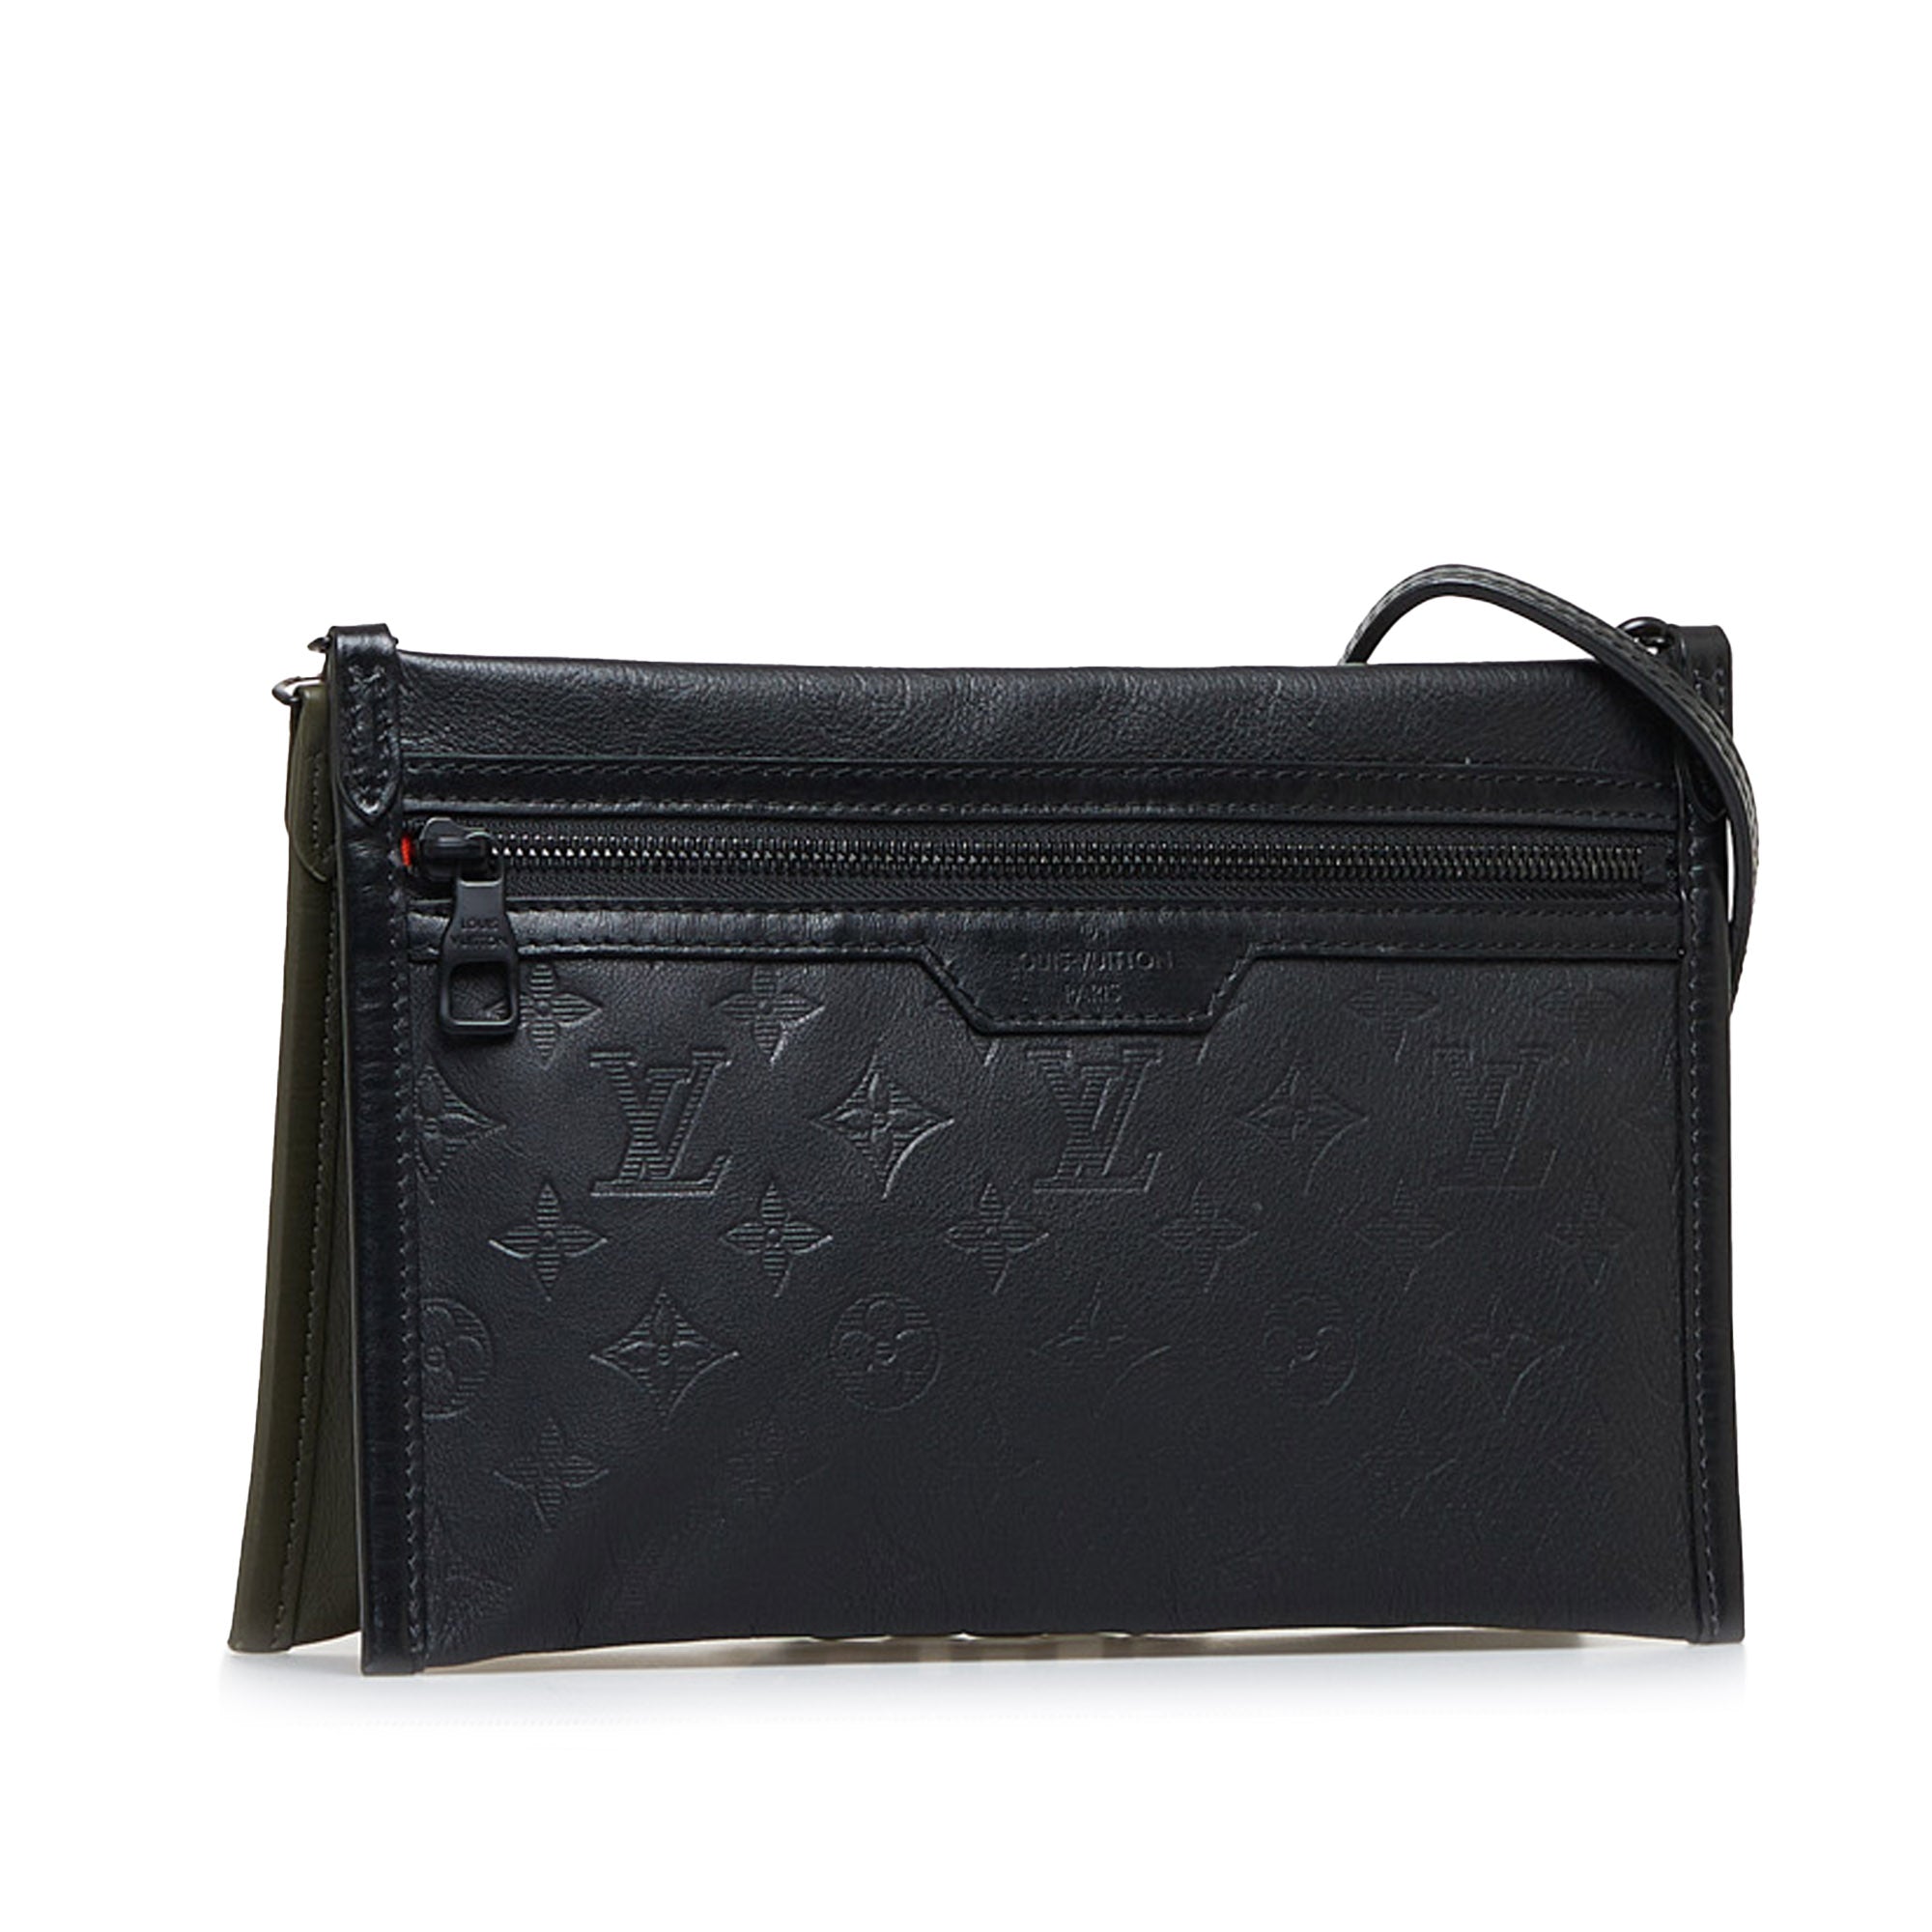 Authentic Louis Vuitton Monogram Double Flat Messenger Bag – Paris